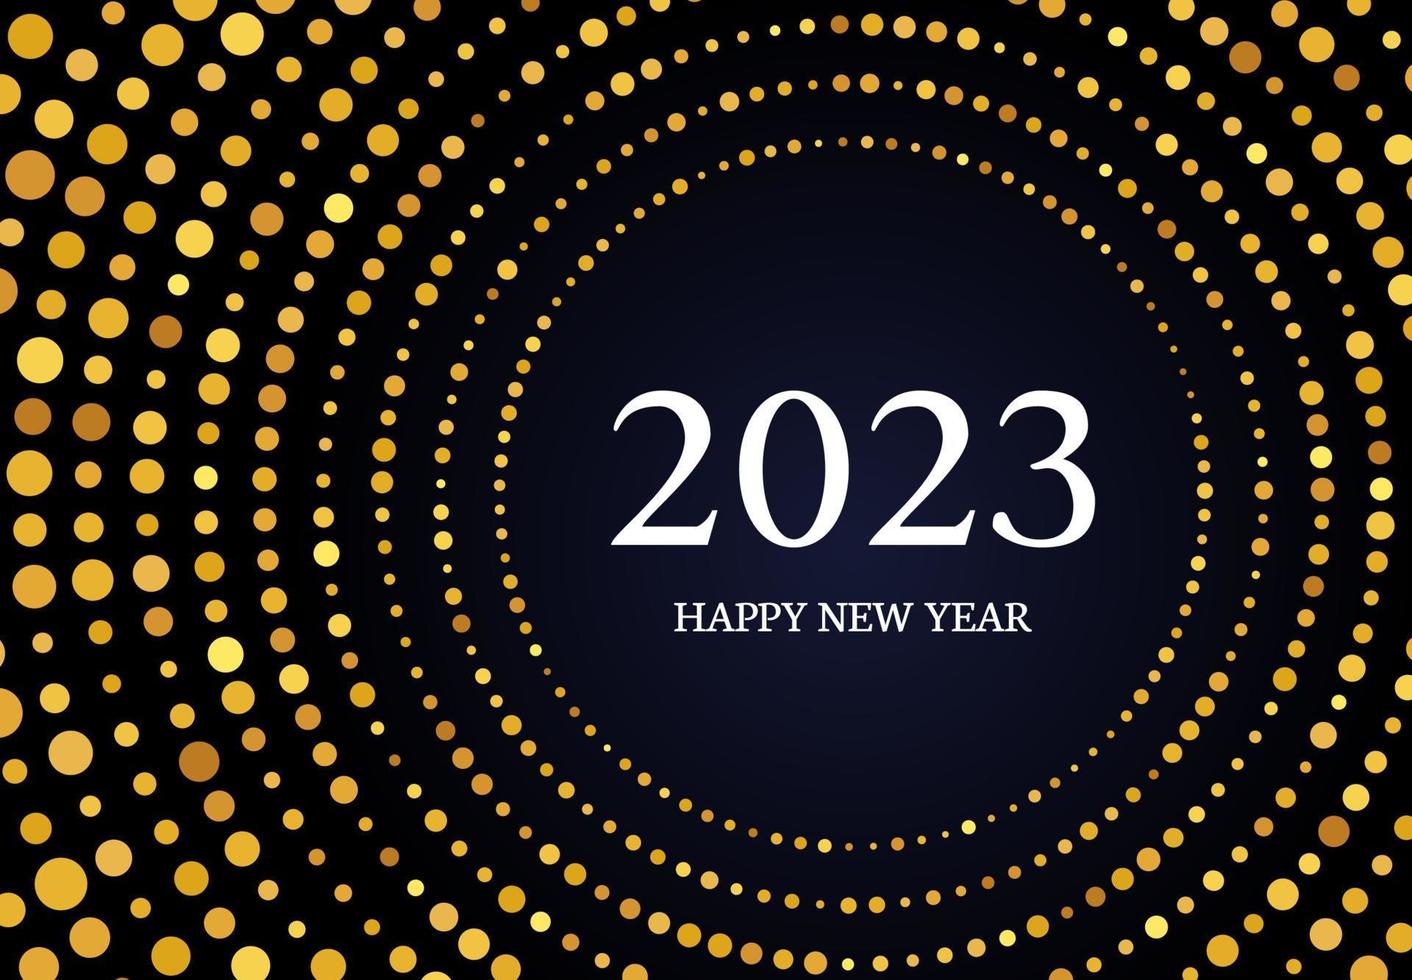 2023 Frohes neues Jahr mit goldenem Glitzermuster in Kreisform. abstrakter goldglühender halbton gepunkteter hintergrund für weihnachtsfeiertagsgrußkarte auf dunklem hintergrund. Vektor-Illustration vektor